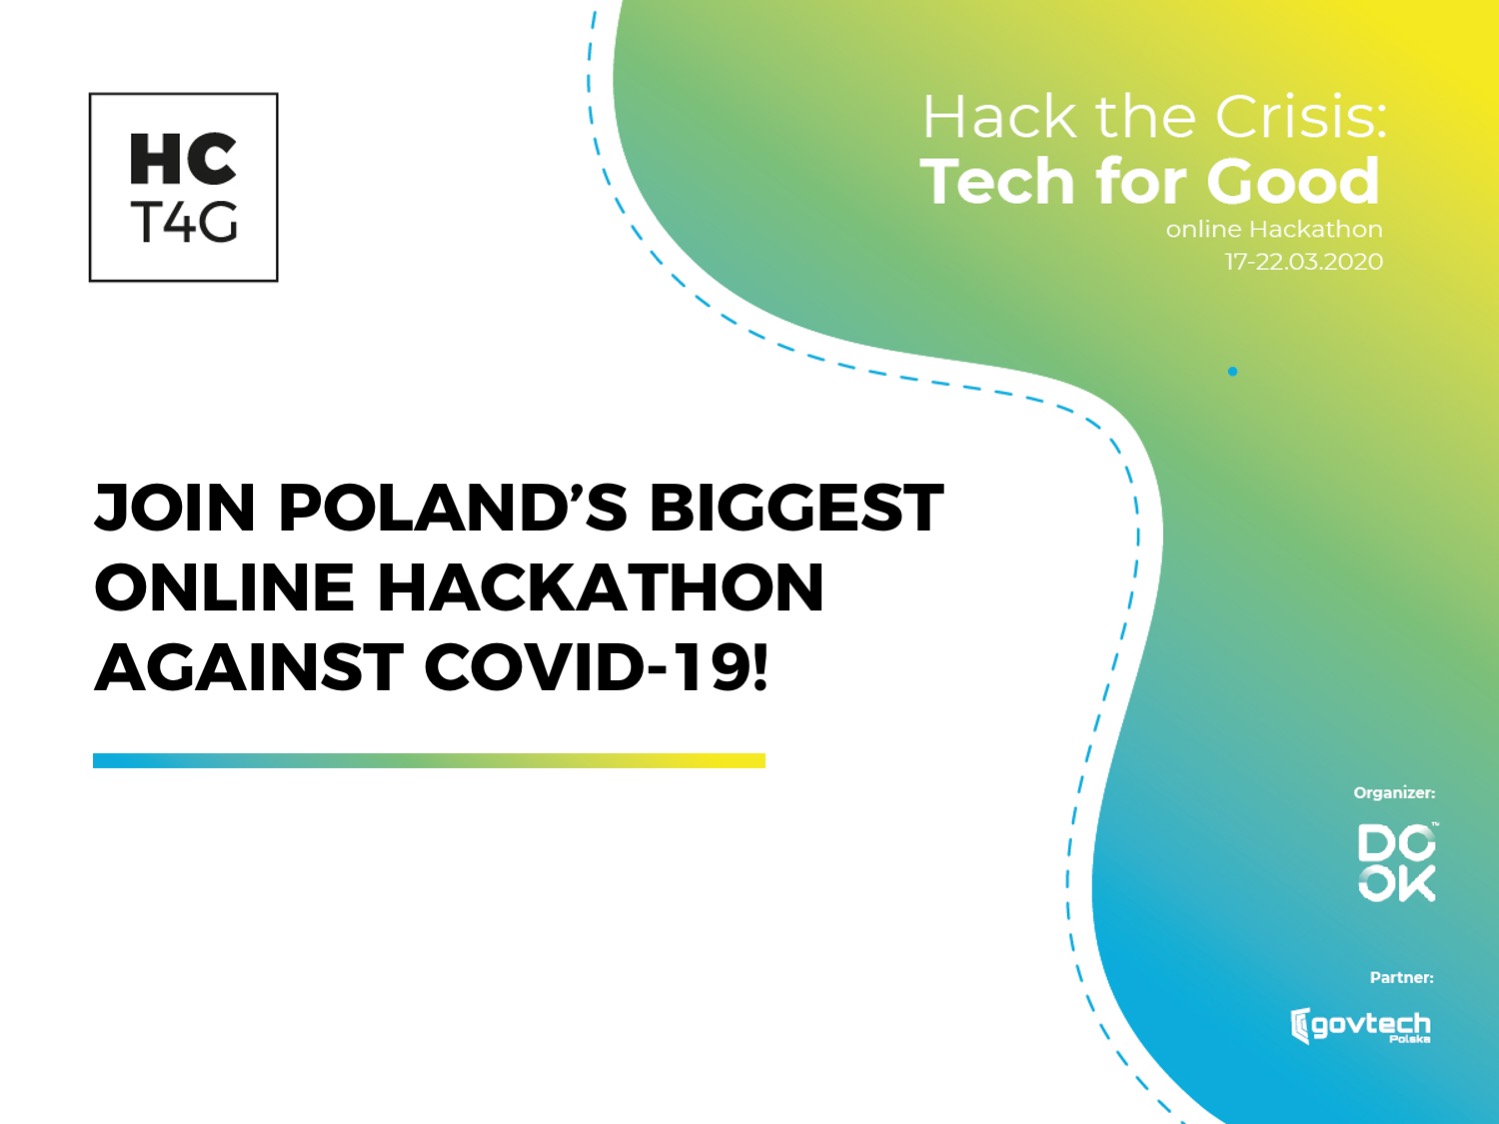 hack-the-crisis-tech-for-good-hackathon-marzec-2020